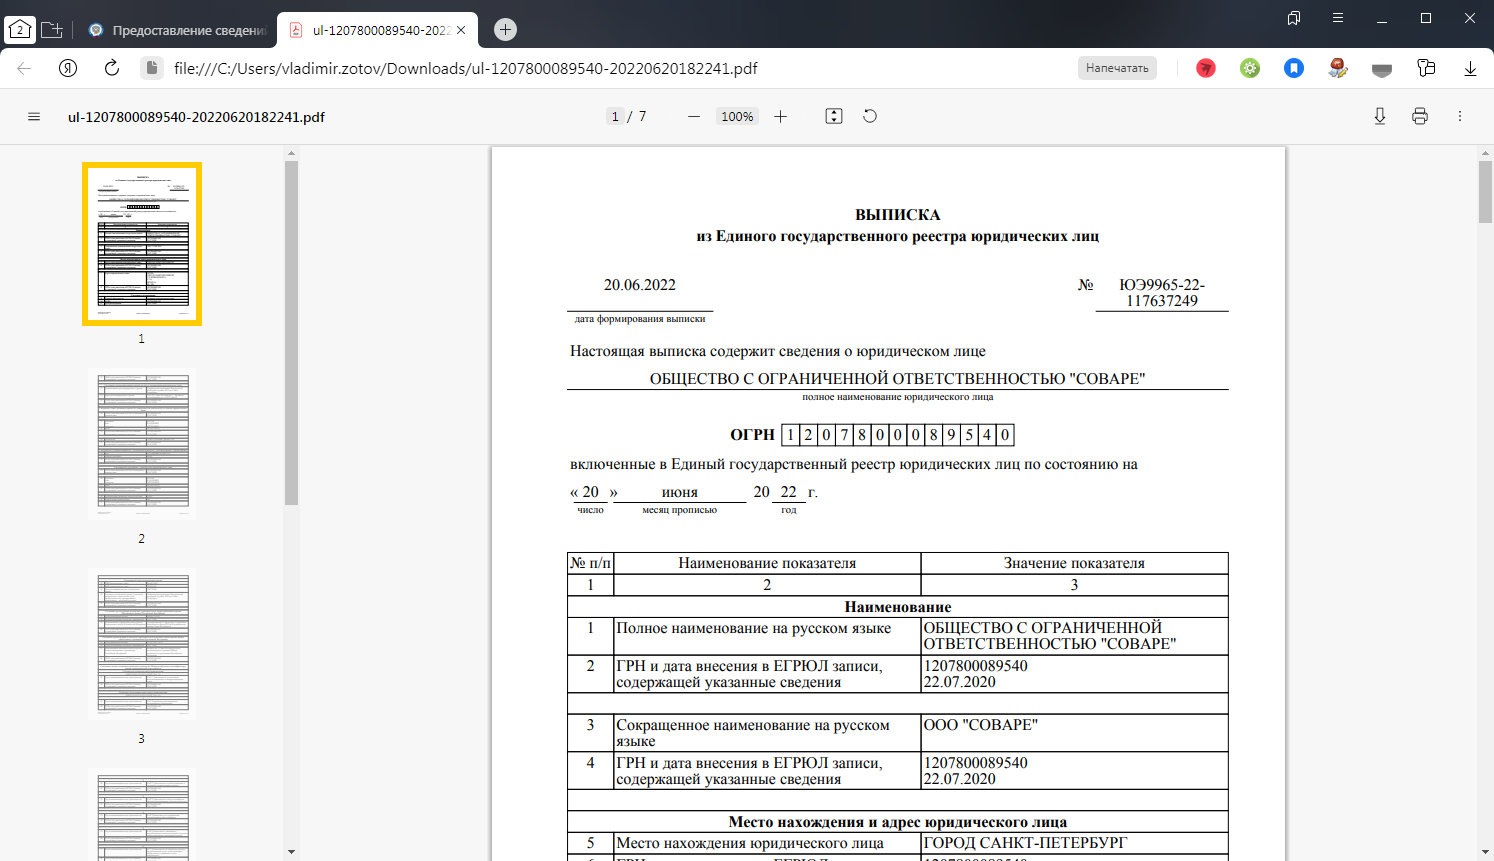 Выгруженный документ из сервиса получения выписки из ЕГРЮЛ/ЕГРИП для проверки контрагентов от ФНС РФ